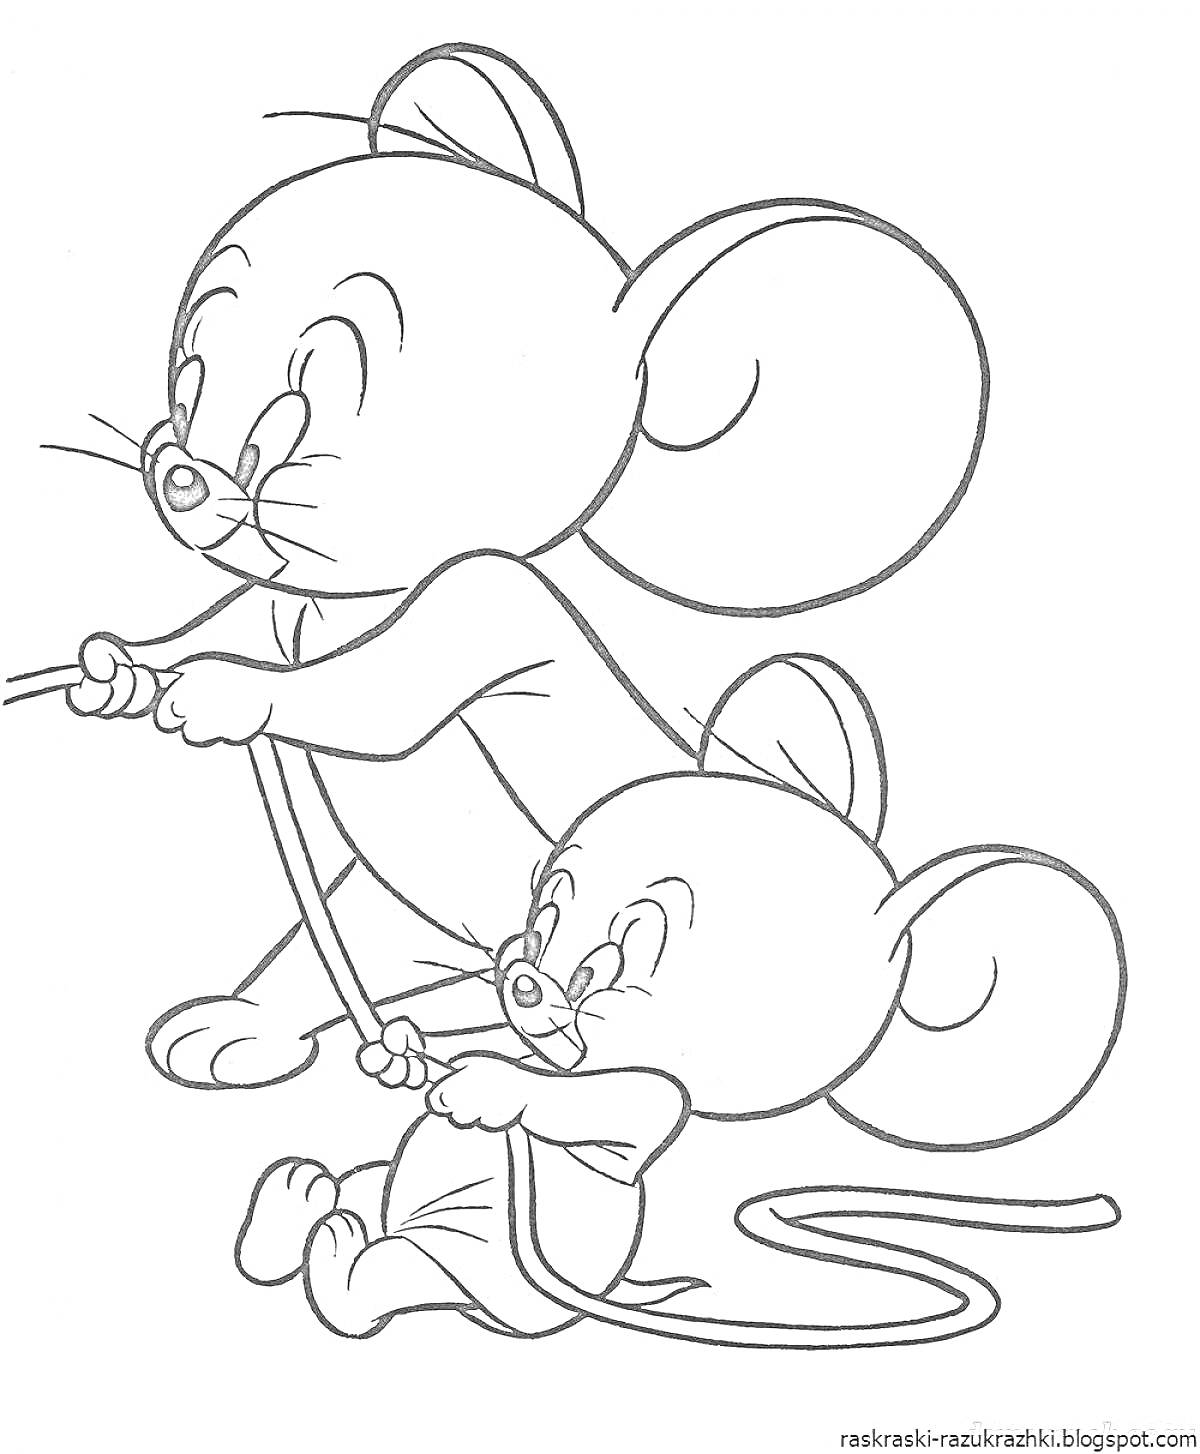 Две мышки с веревкой